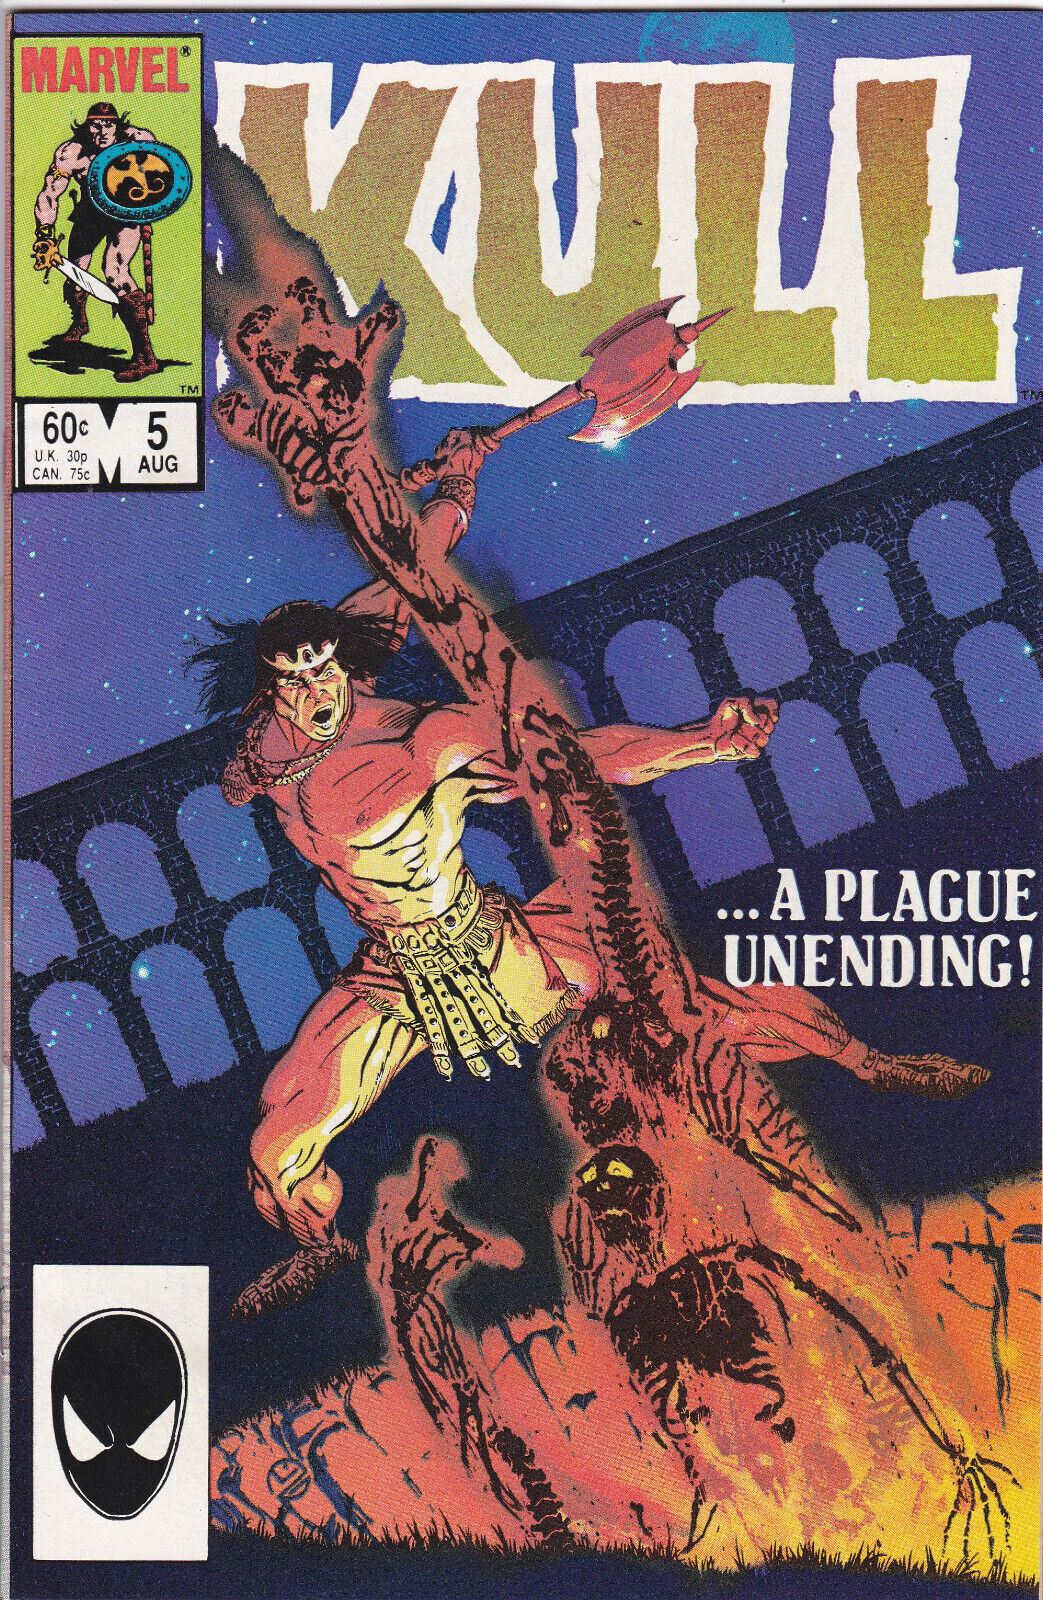 Kull the Conqueror #5, Vol. 3 (1983-1985) Marvel Comics, Direct Edition